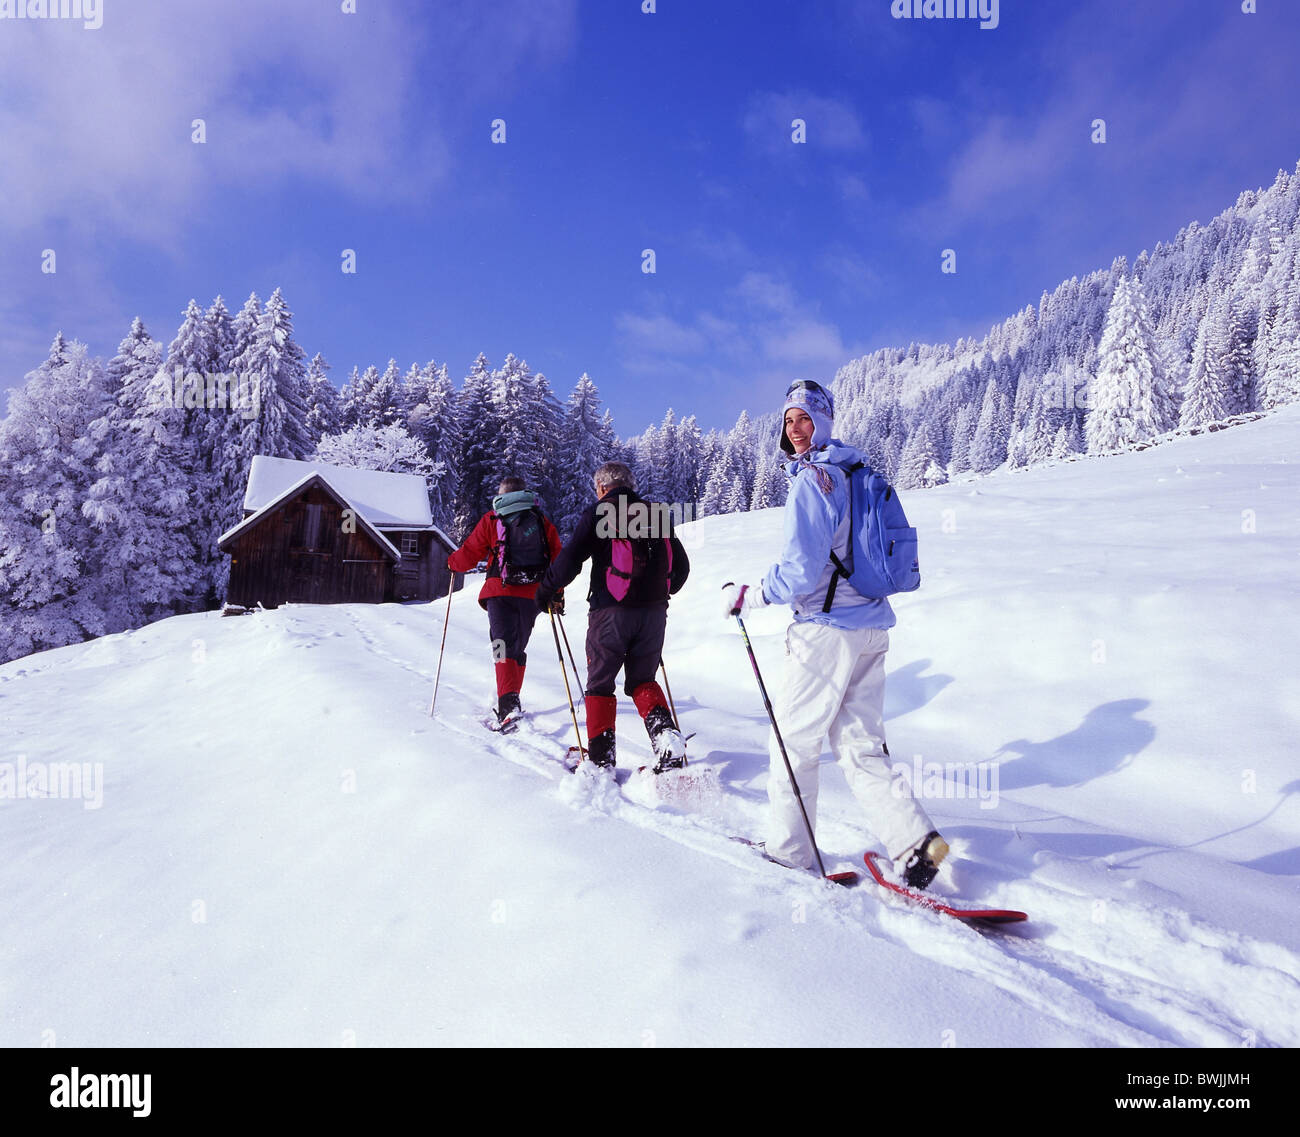 Gruppo d'Inverno Sport Tempo libero paesaggio paesaggio coperto di neve snowbound nevoso foresta di legno di foresta di conifere Foto Stock